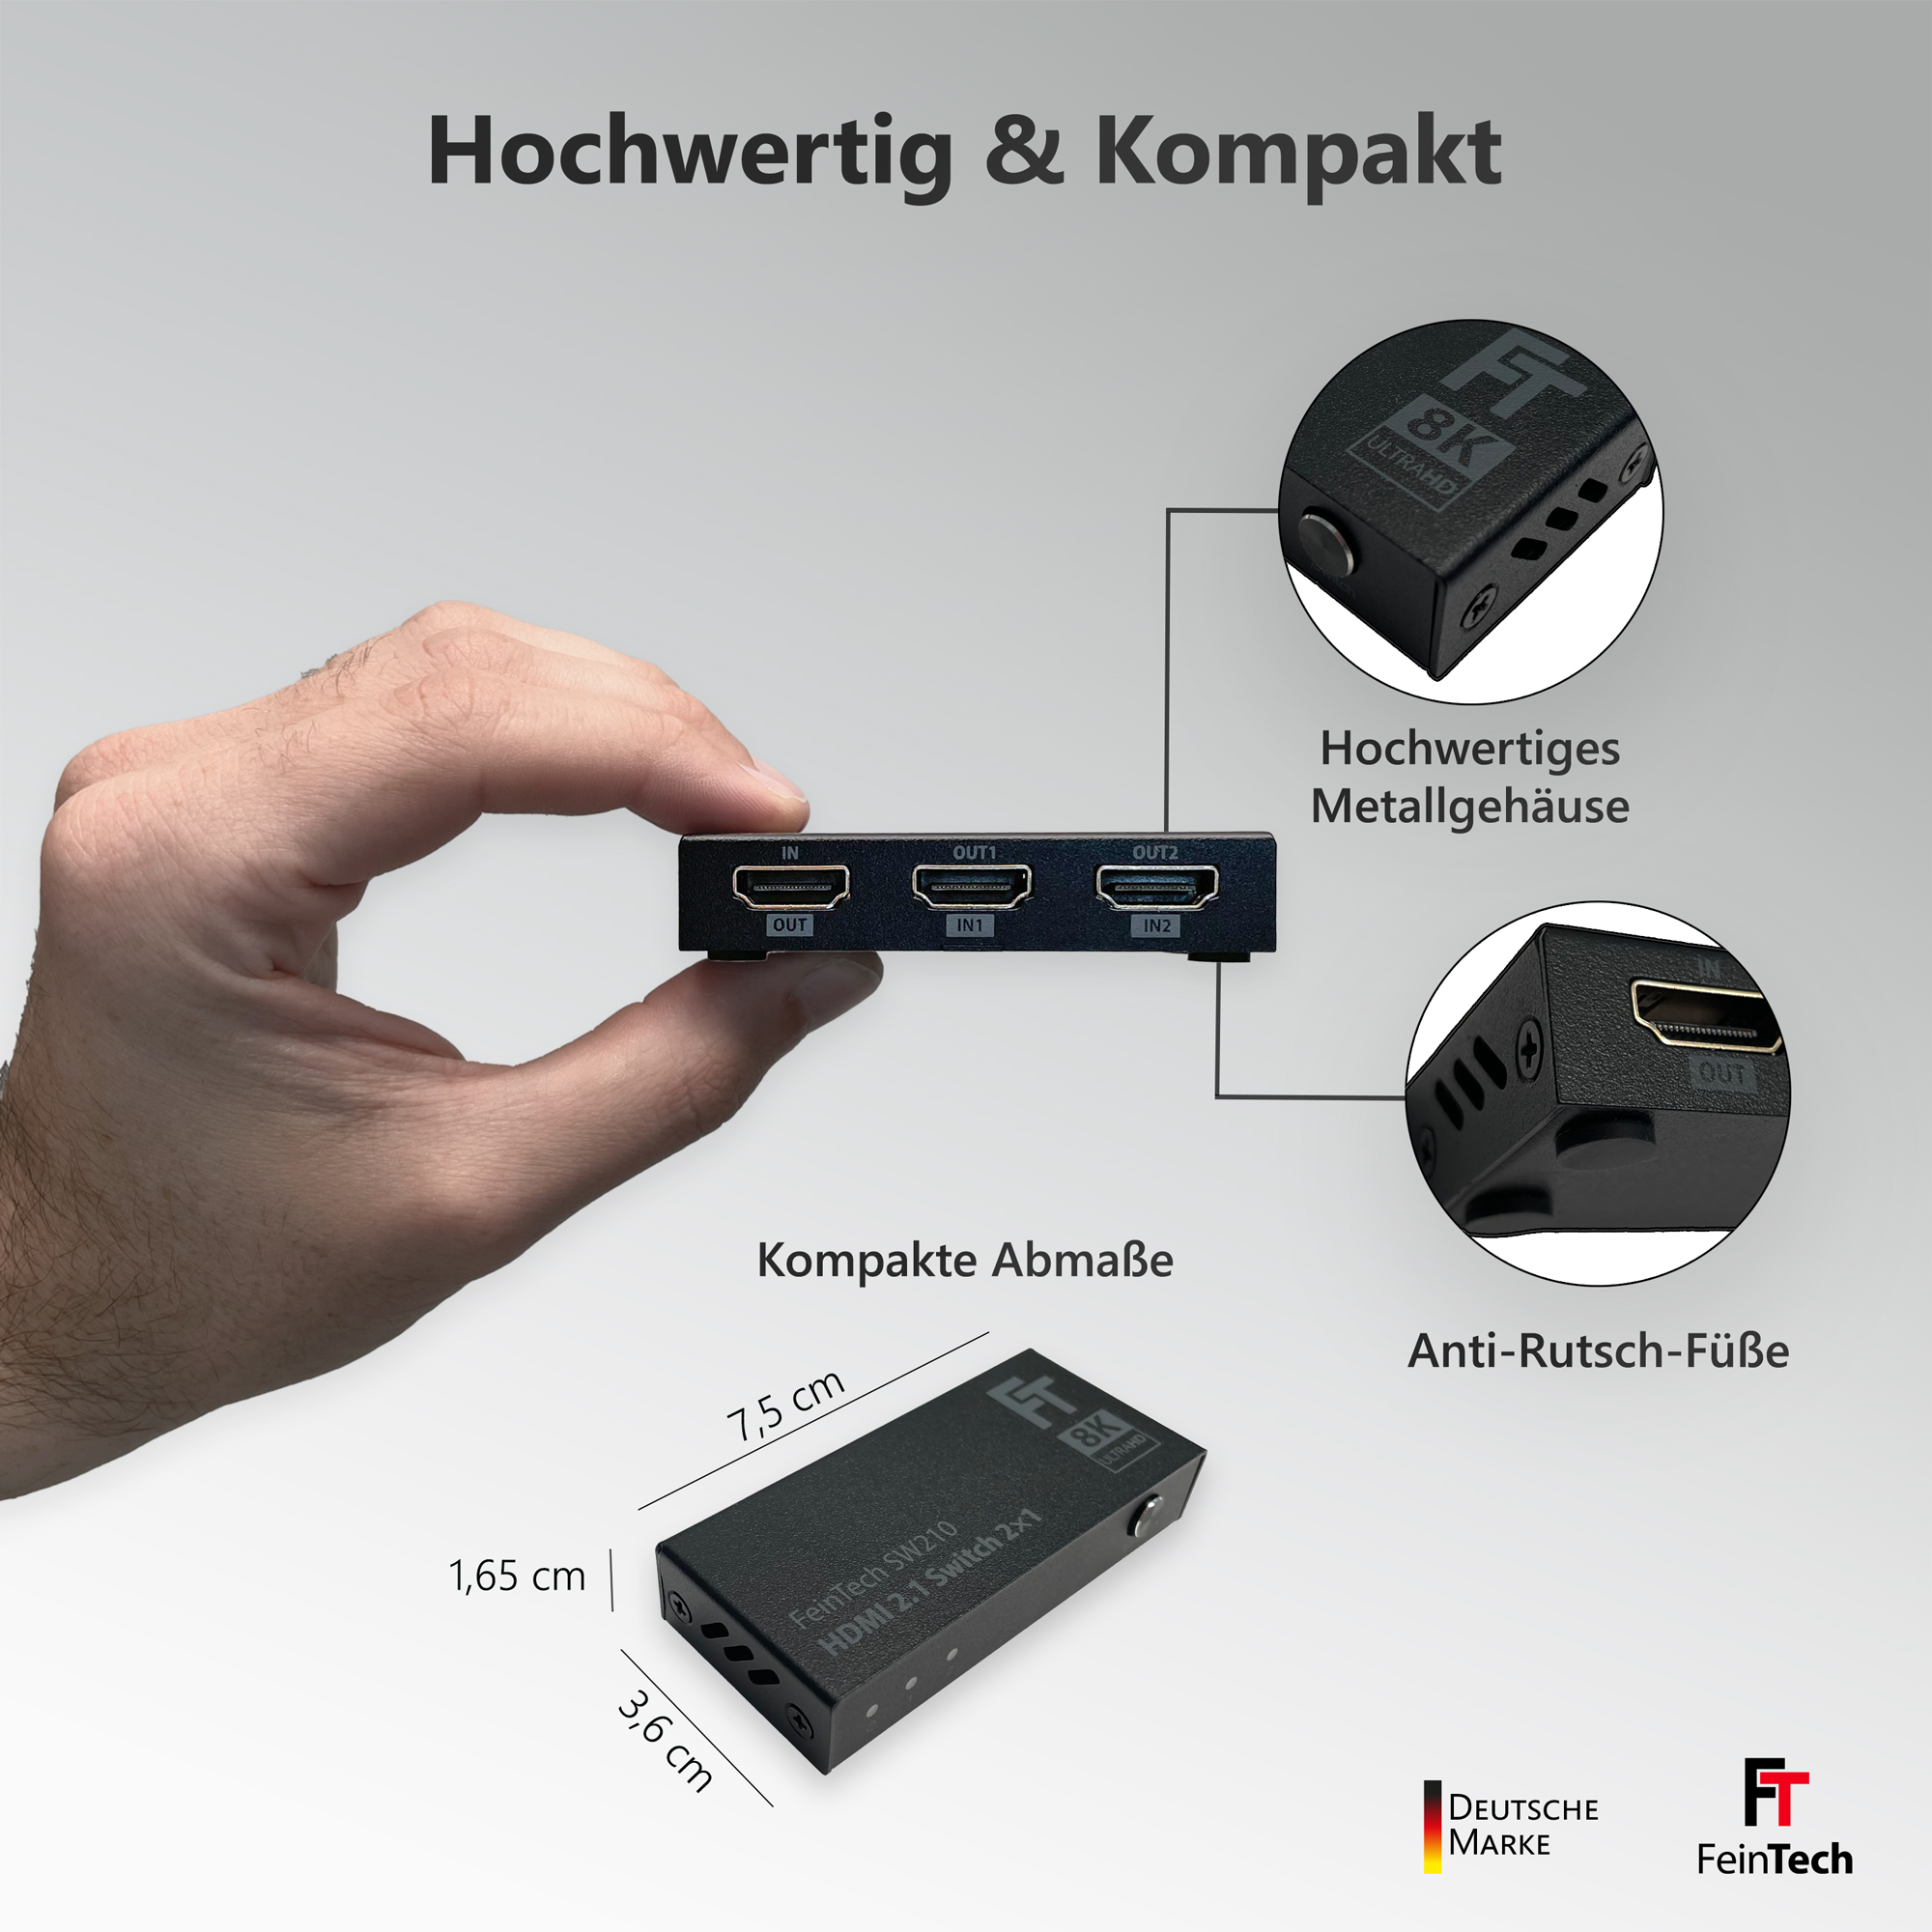 8K SW210 4K HDMI-Switch FEINTECH 120Hz